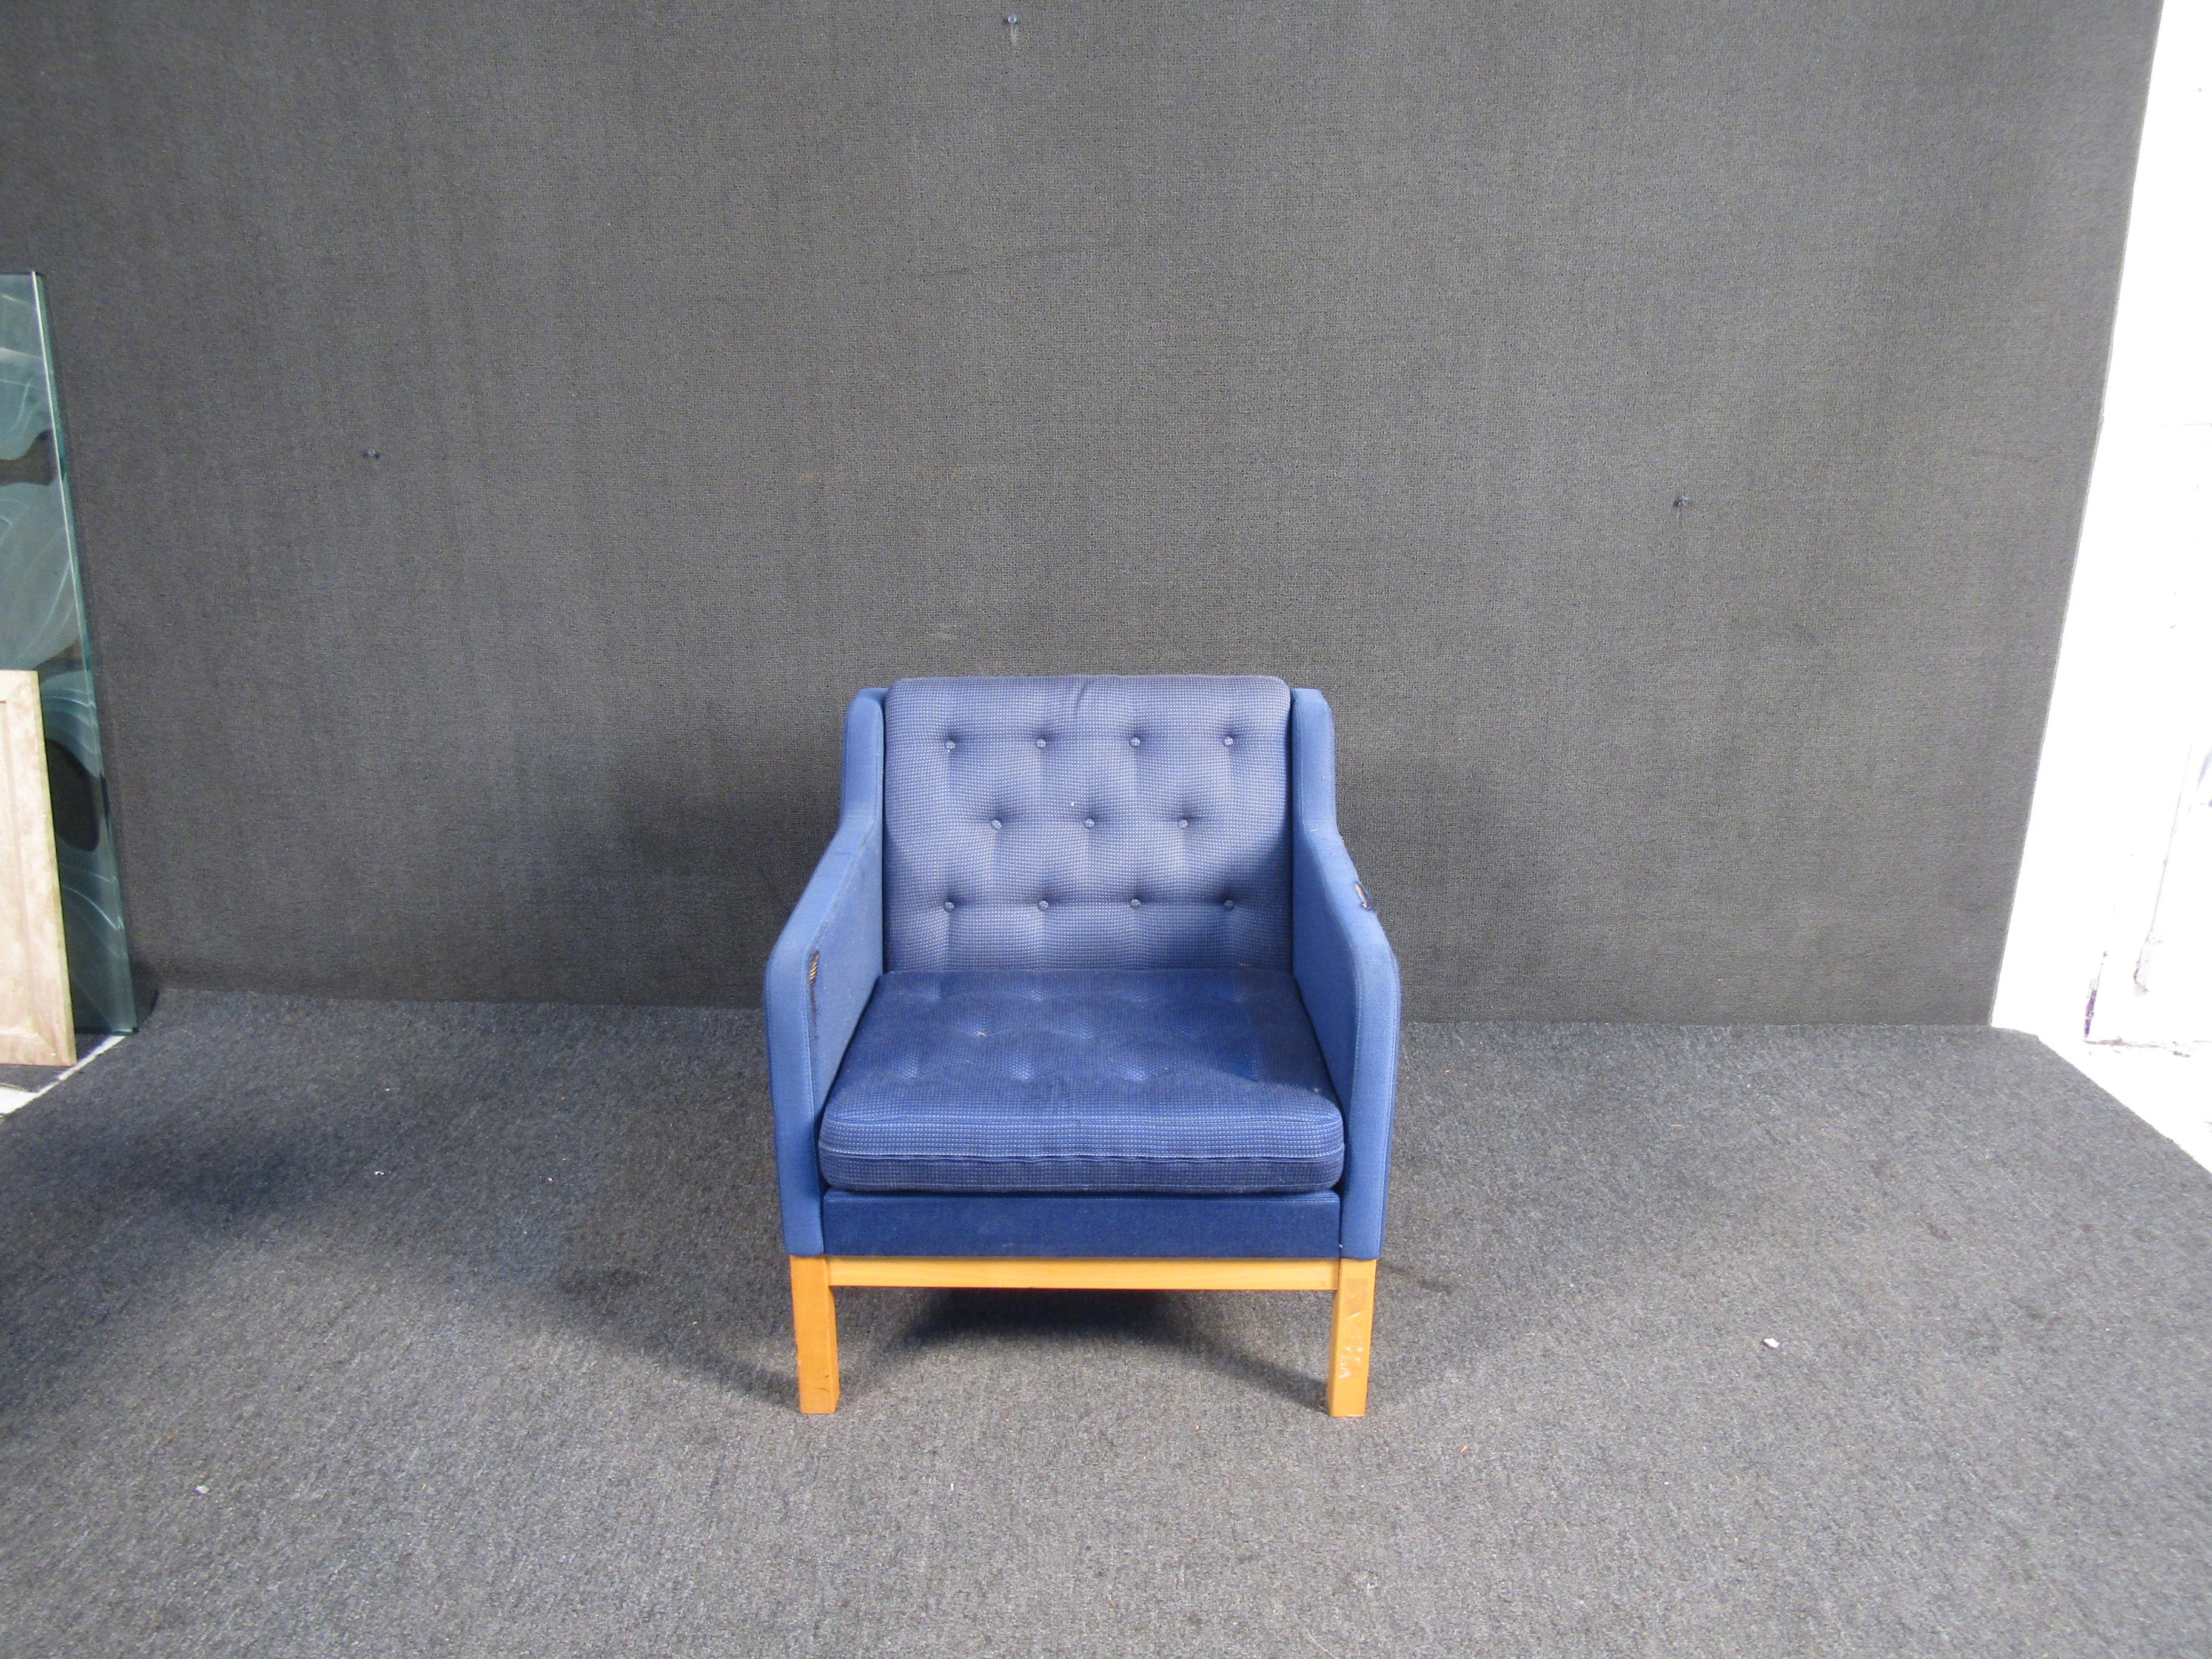 Ce fabuleux fauteuil club bleu vintage présente un dossier touffeté, une base en bois et est recouvert d'un confortable tissu bleu. Cette chaise serait un excellent complément à tout espace de détente.

Veuillez confirmer la localisation de